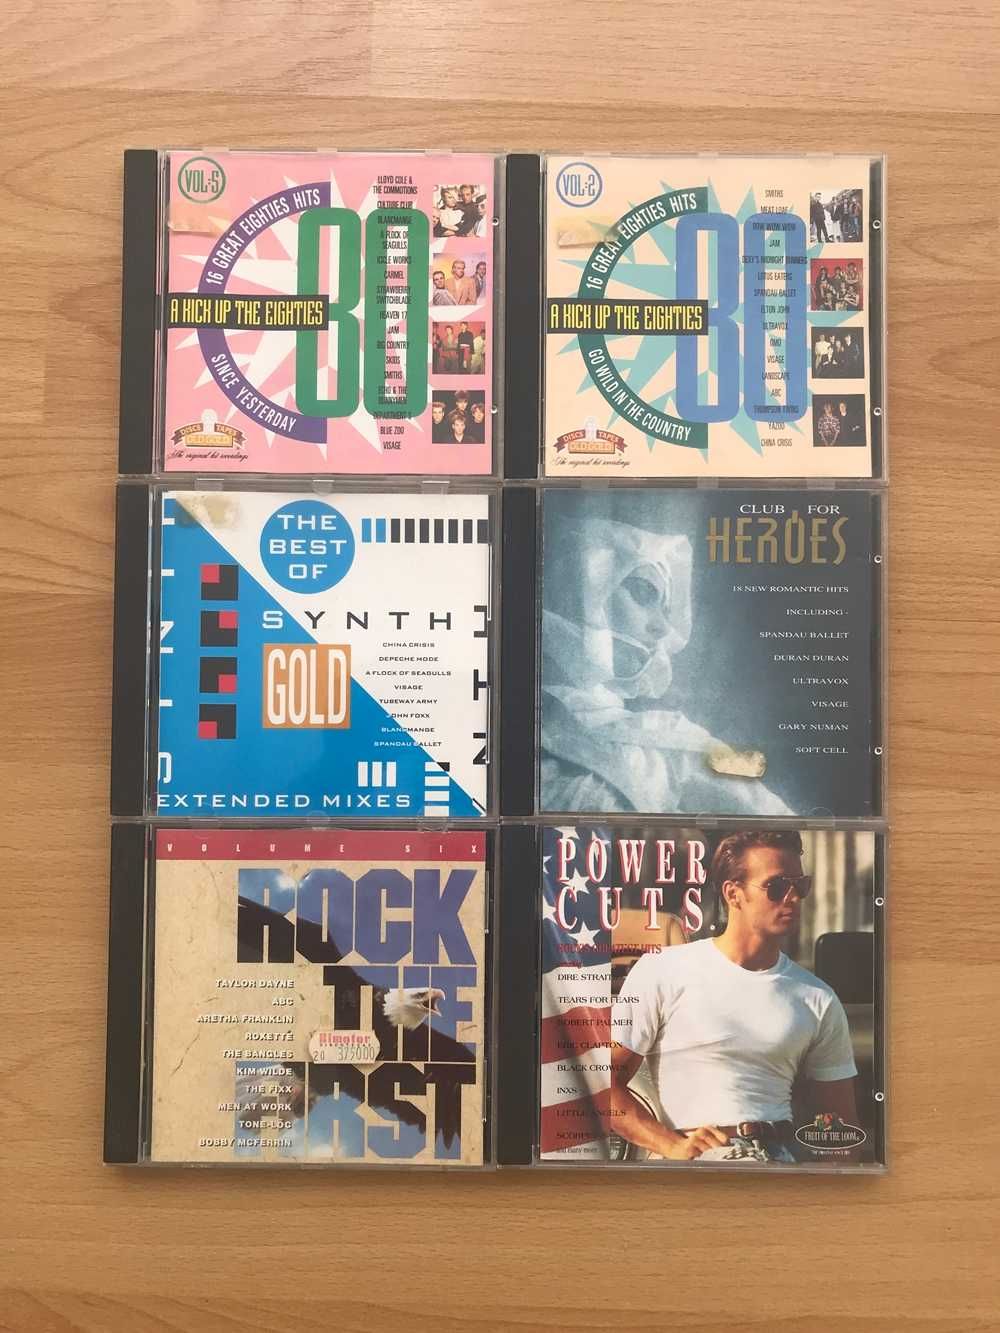 Discos CD anos 70, 80 e 90